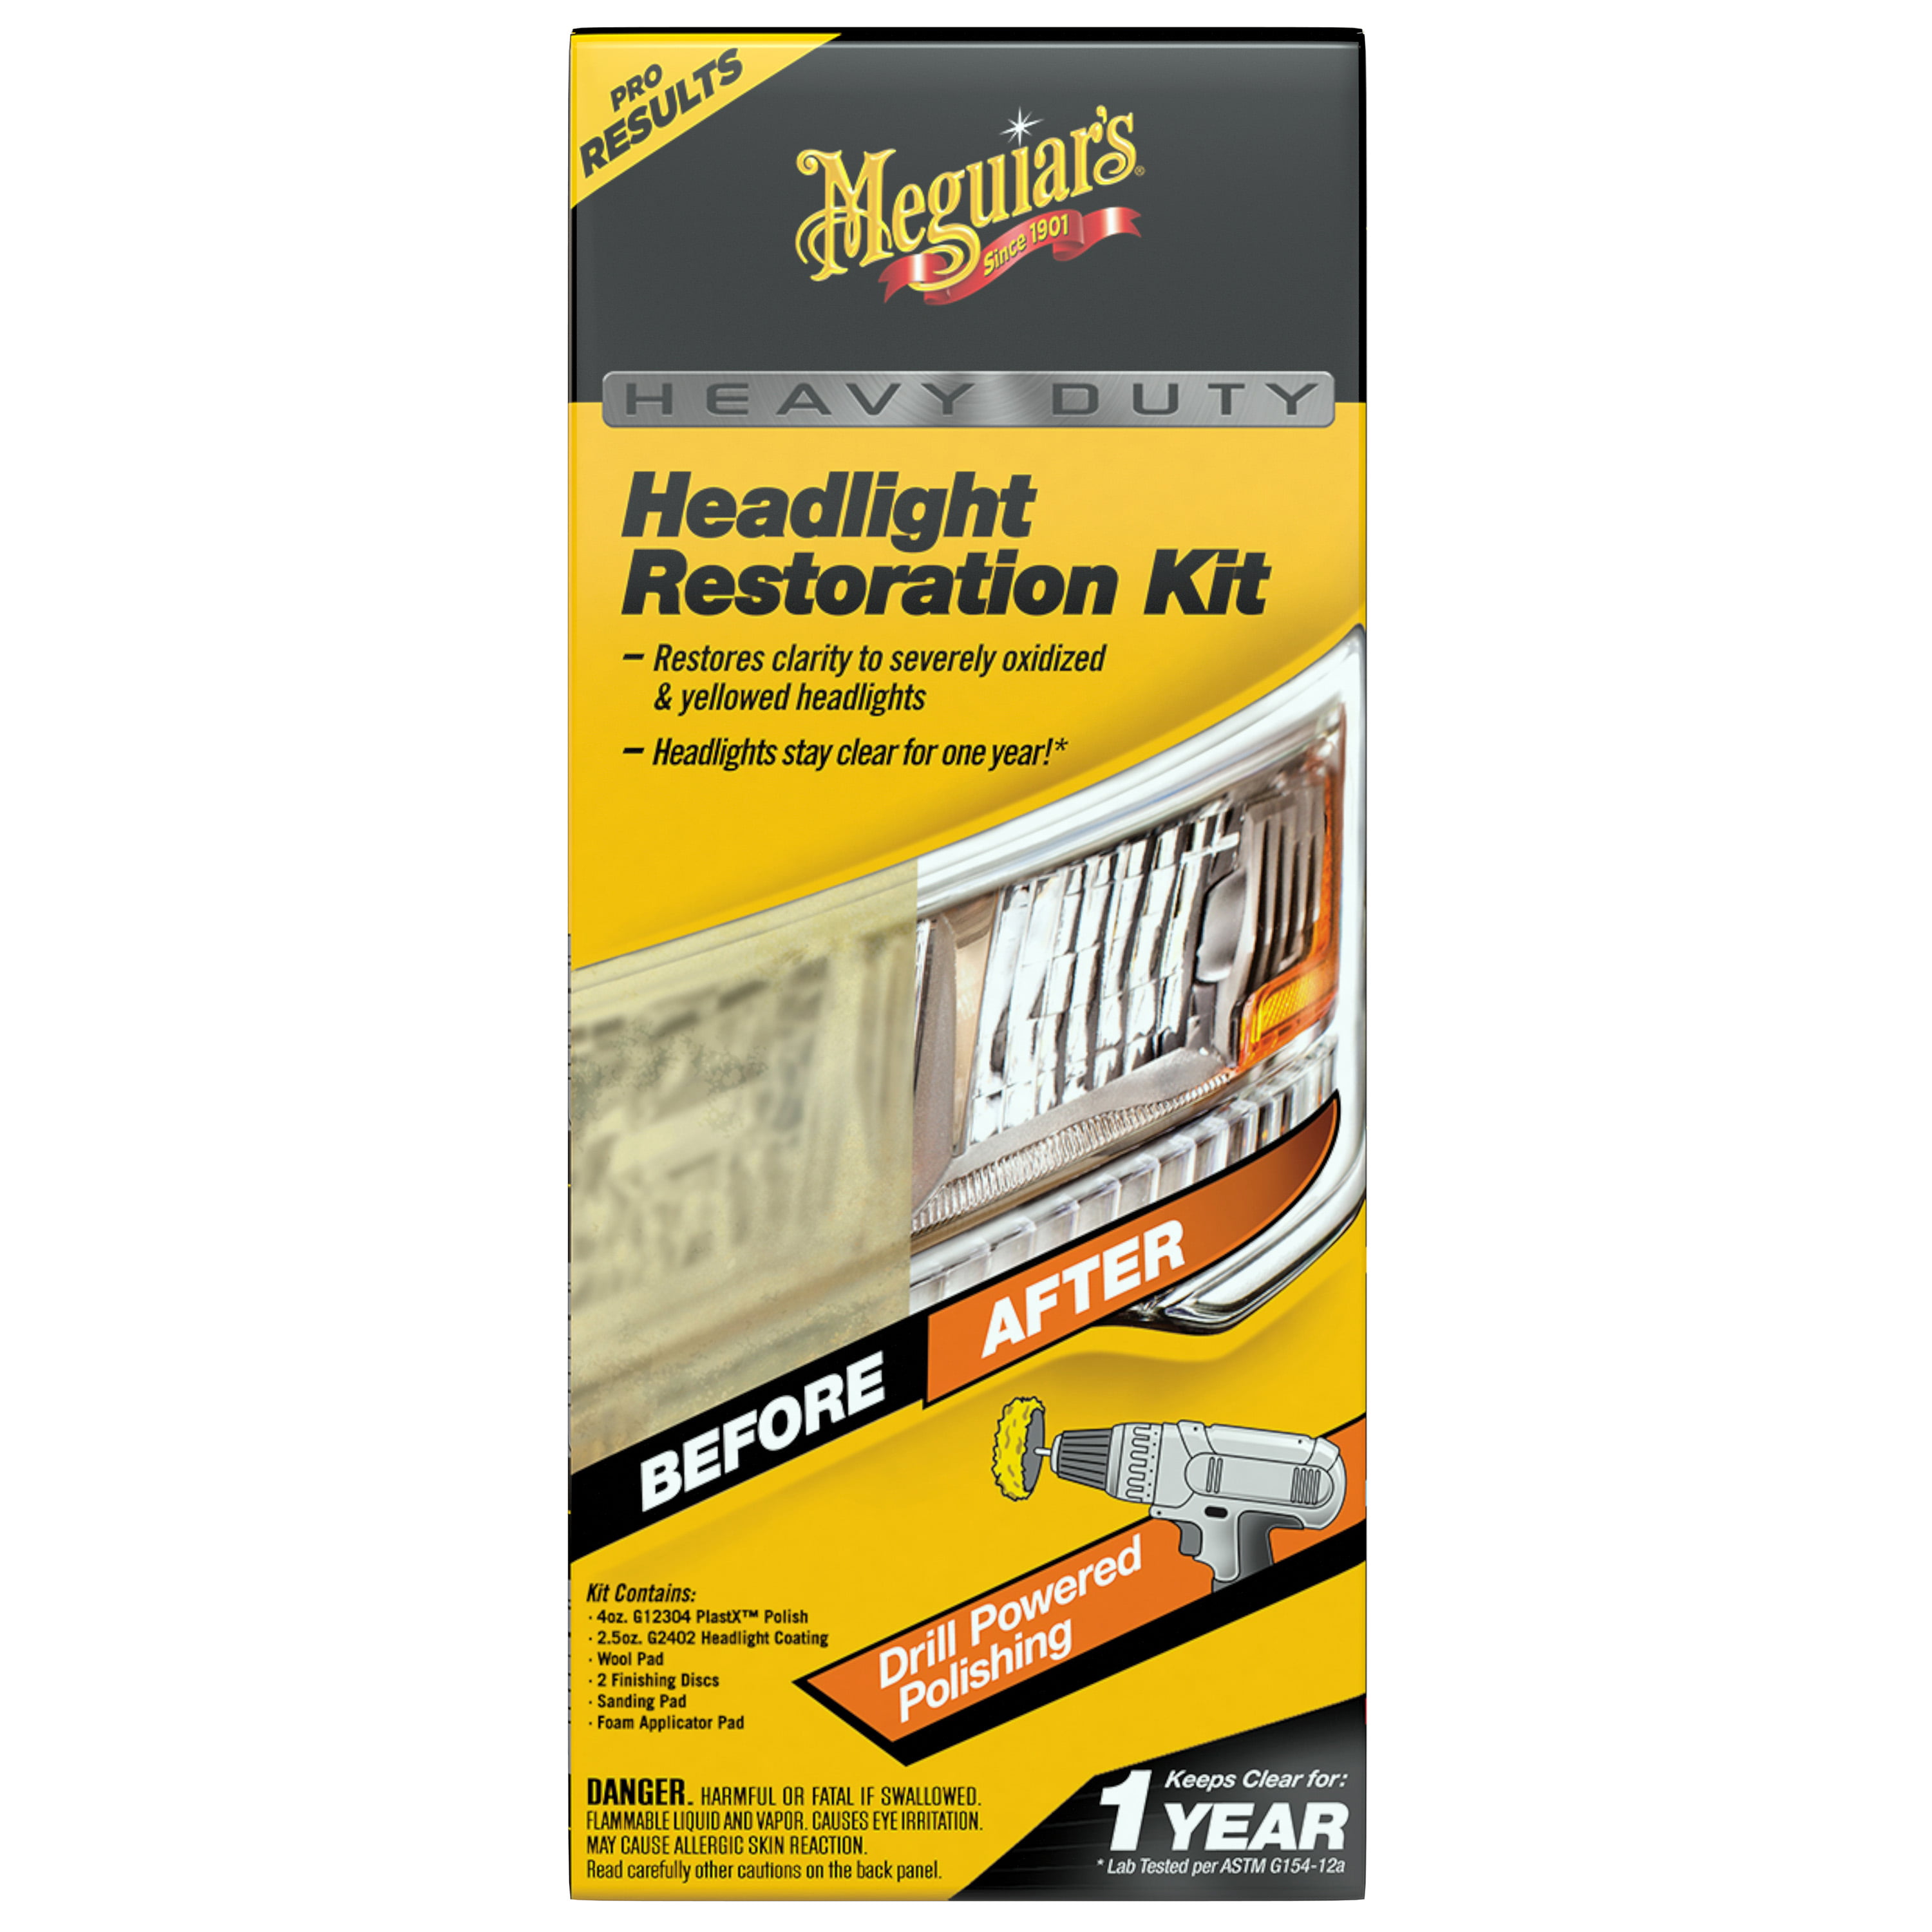 New Gear: Meguiar's Headlight Restoration Kit